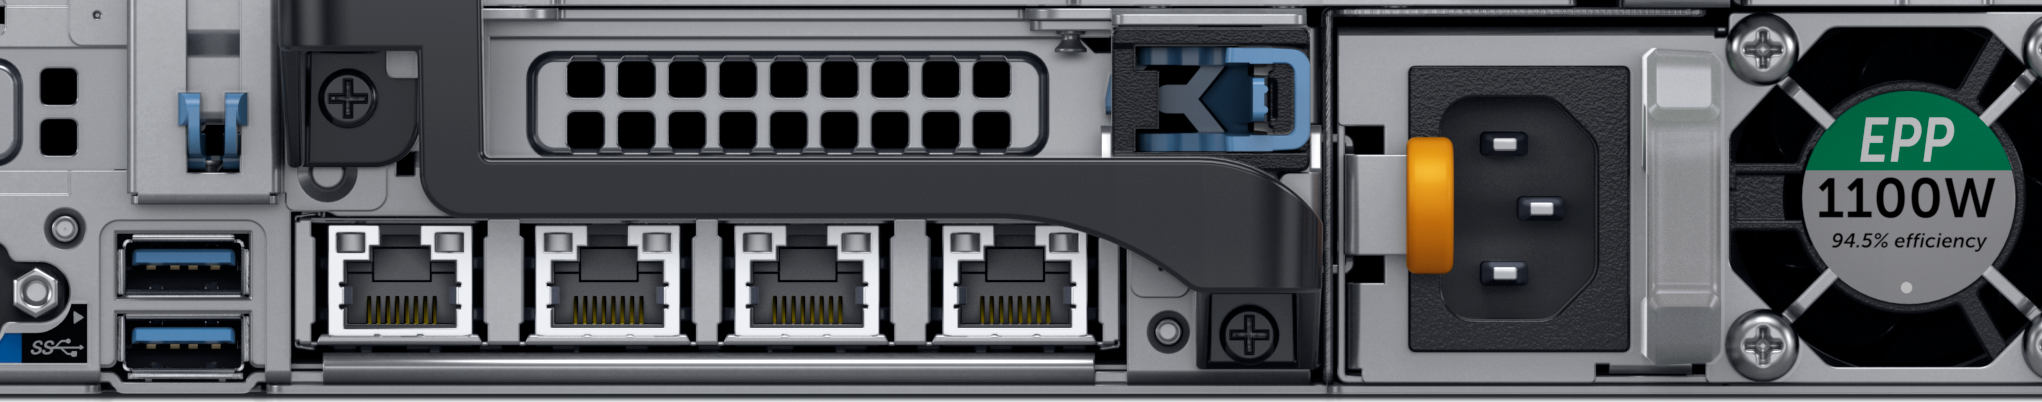 Dell PowerEdge R740 Rack Server : Servers | Dell UK